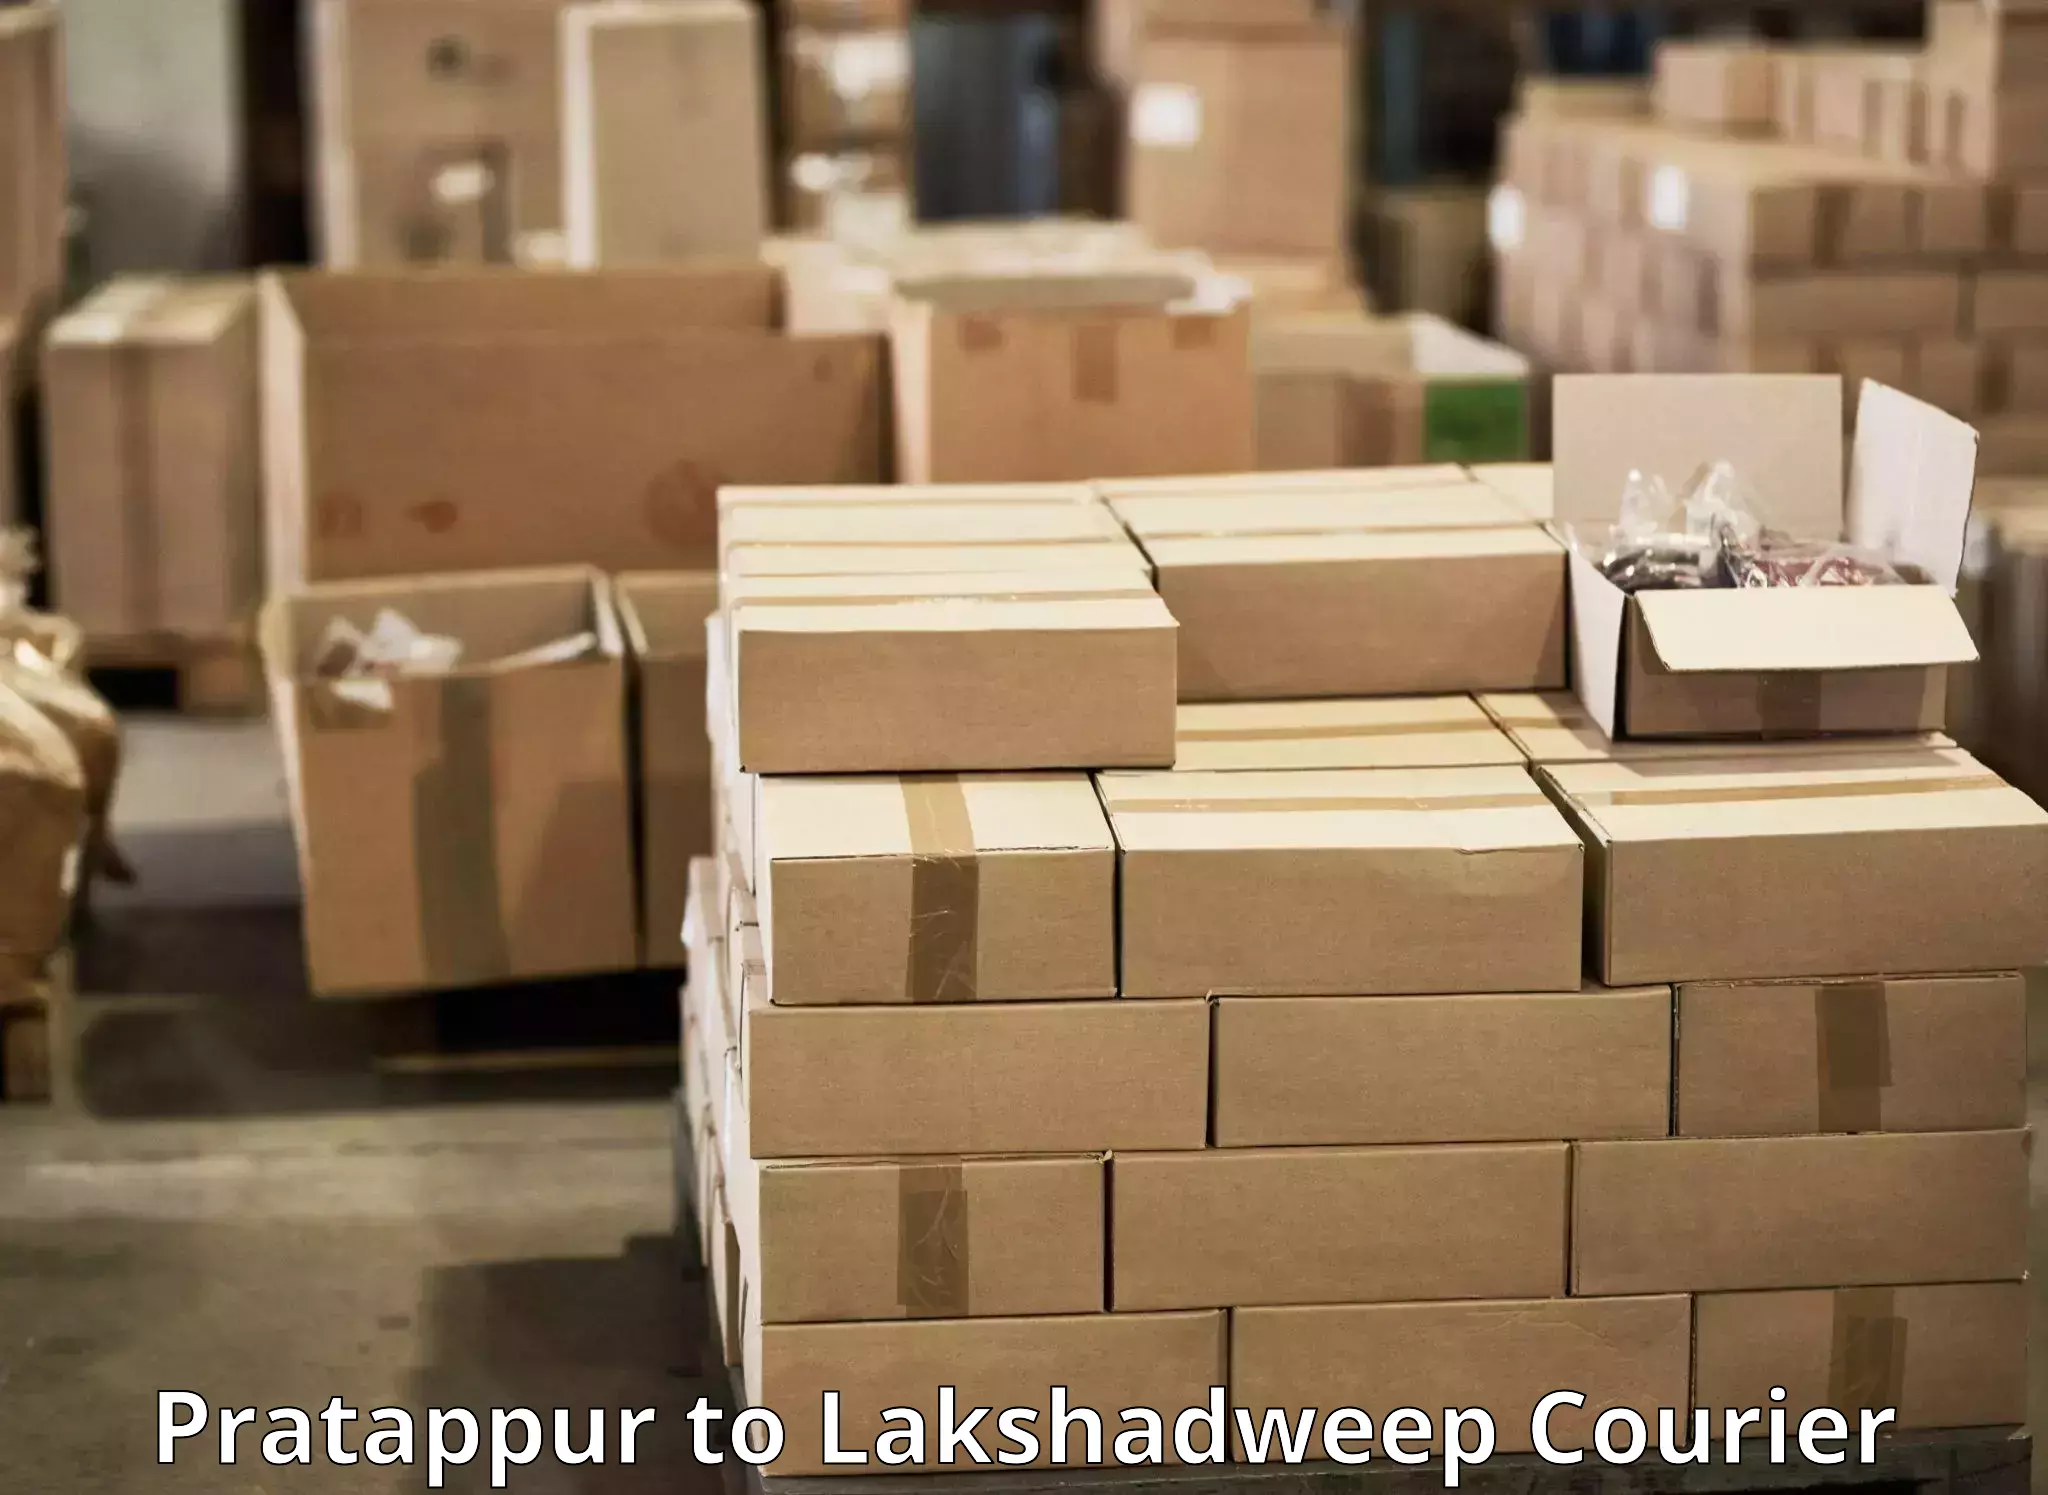 Express package handling Pratappur to Lakshadweep